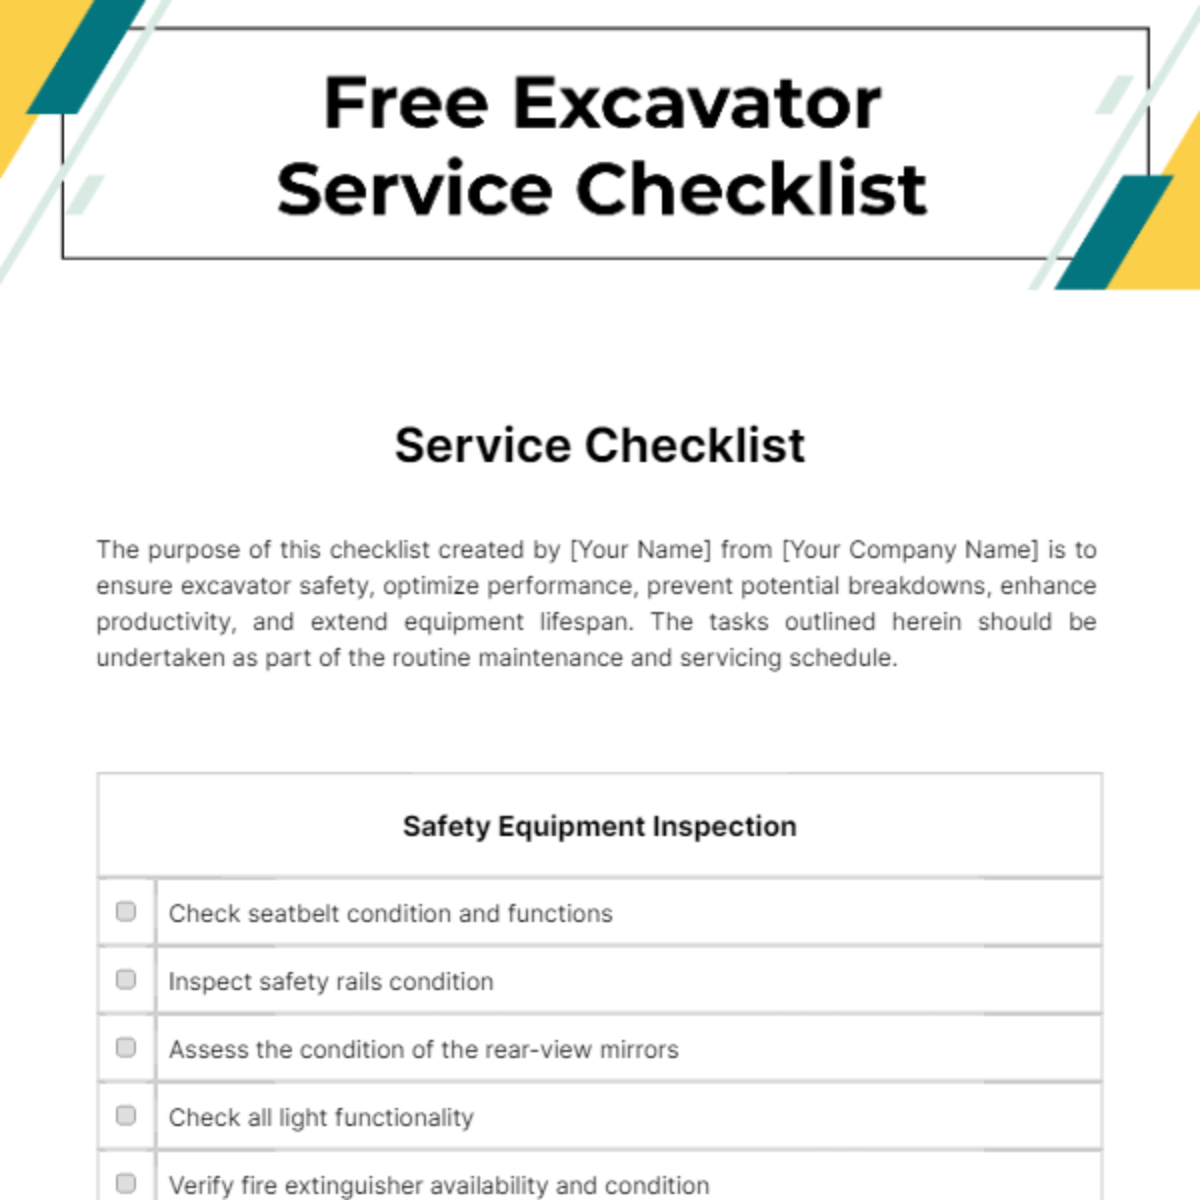 Free Excavator Service Checklist Template